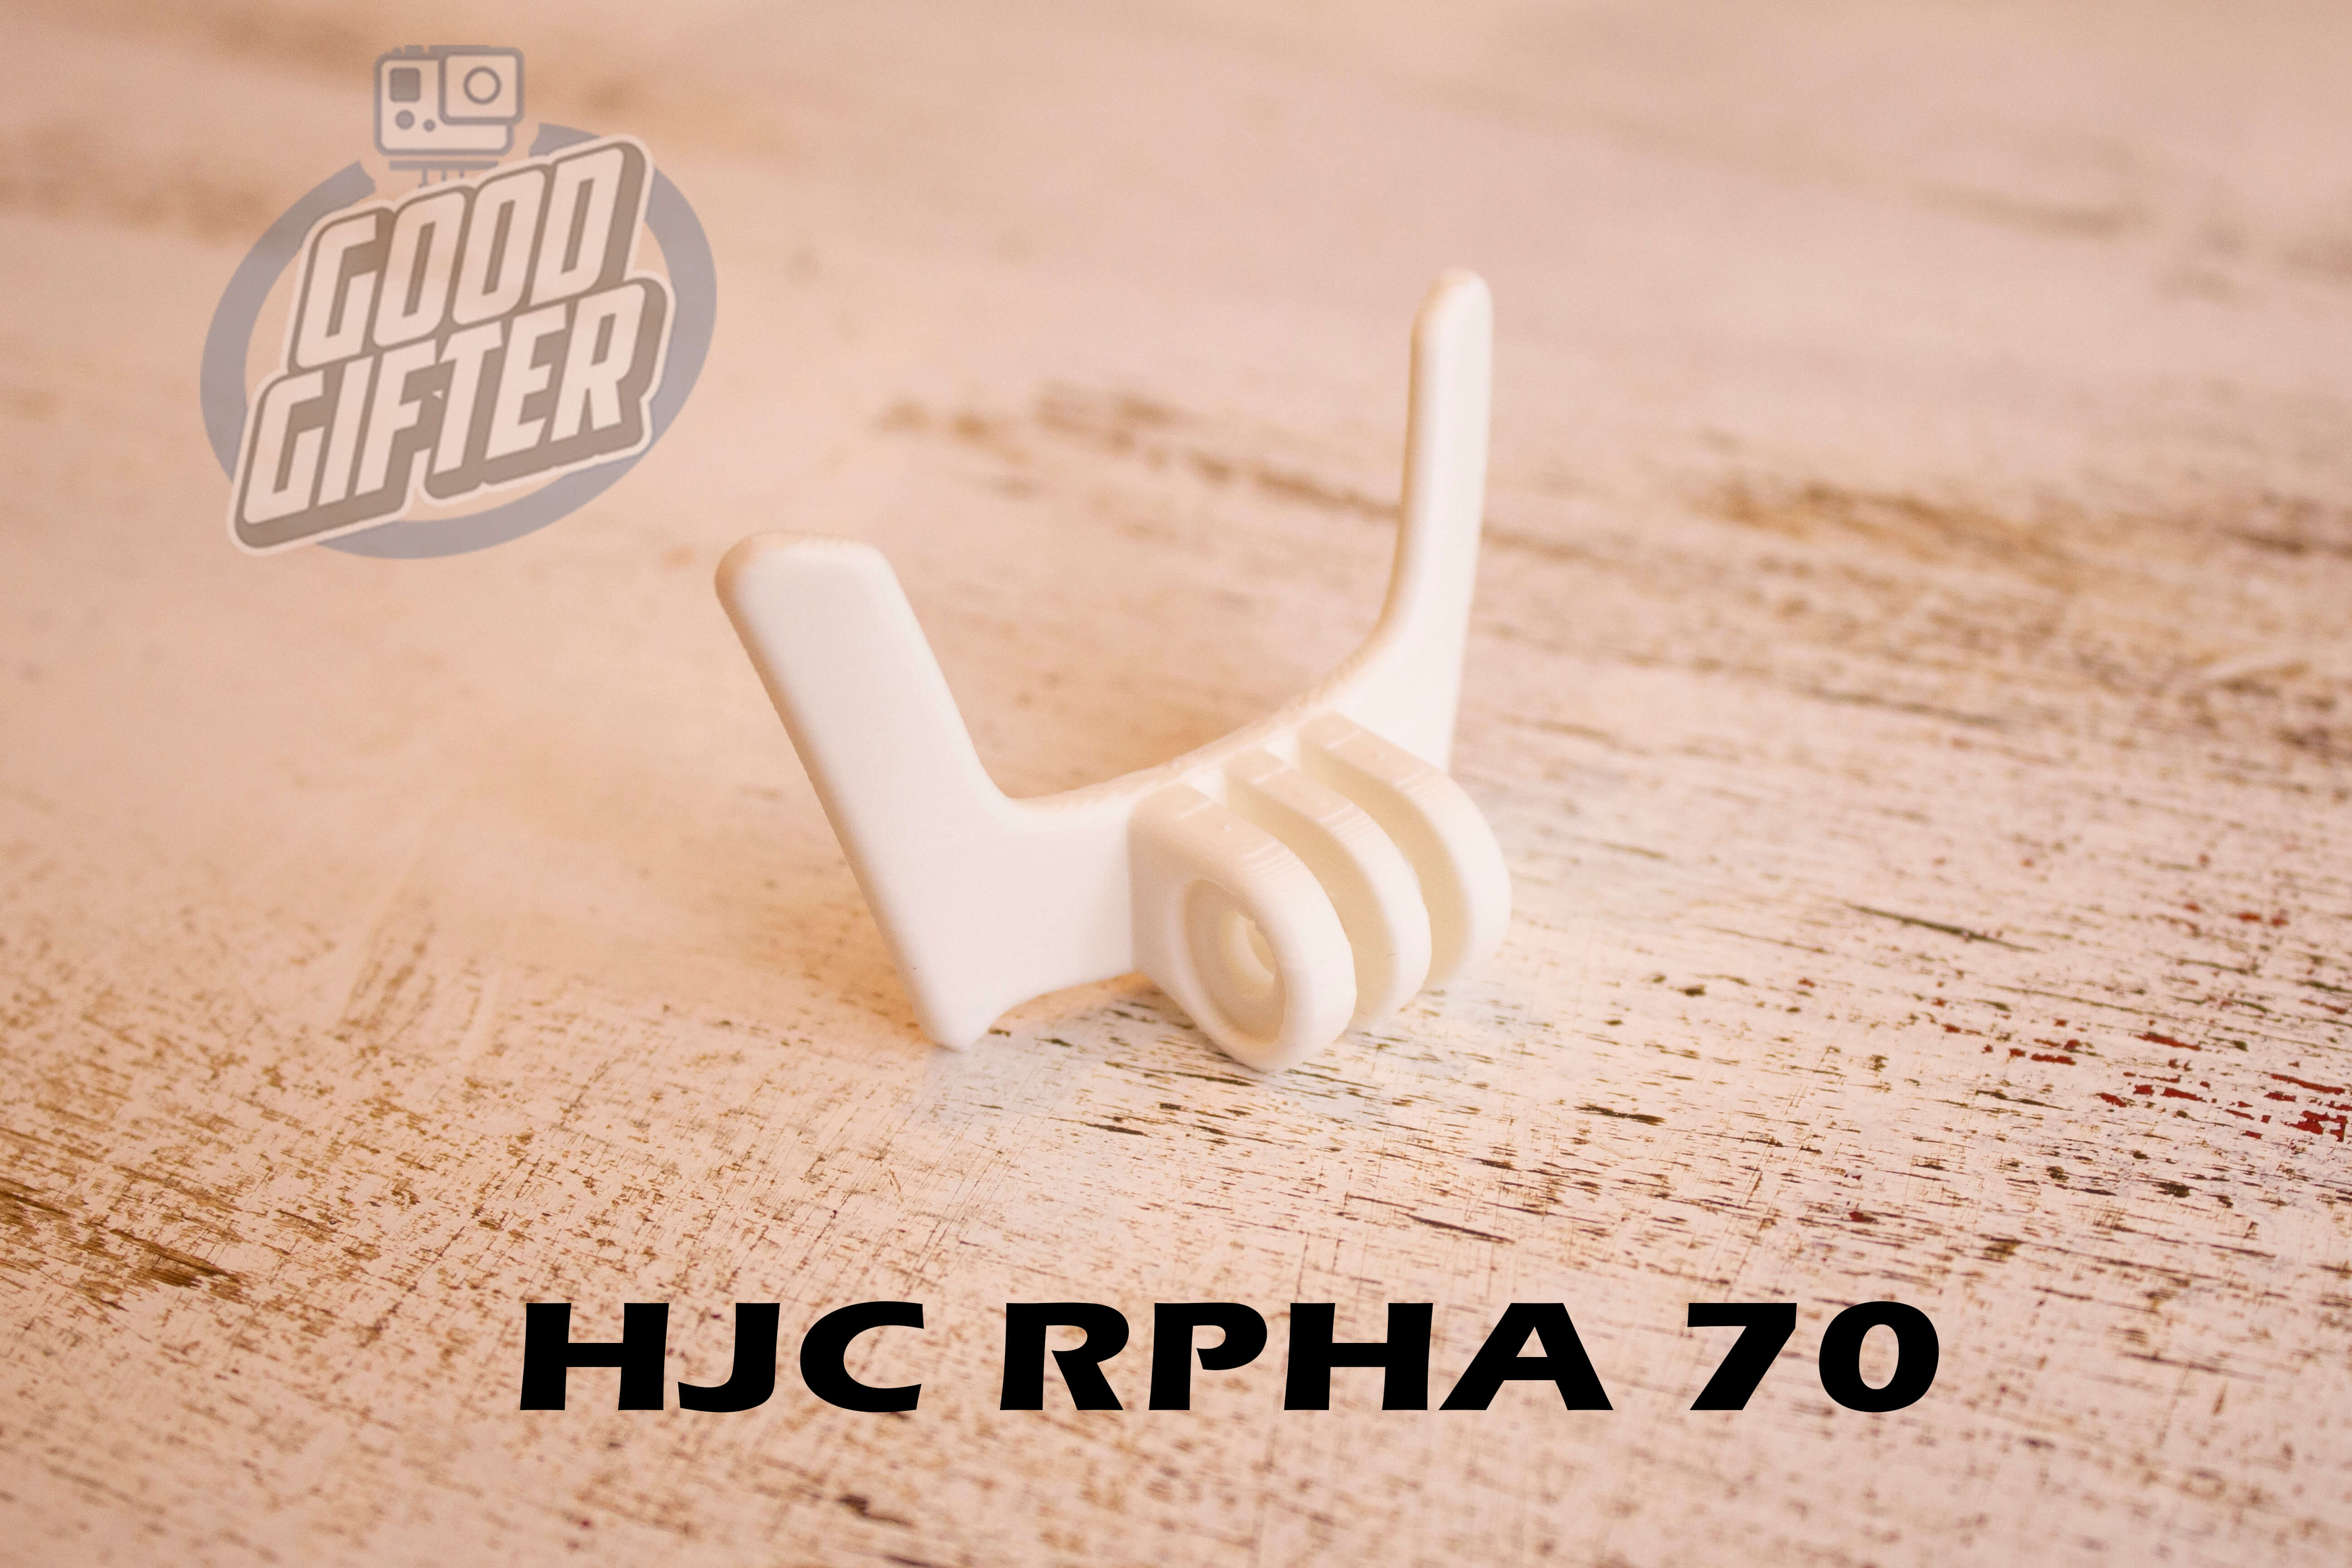 Крепление на мотошлем HJC RPHA 70 в белоv цвете для экшн-камер